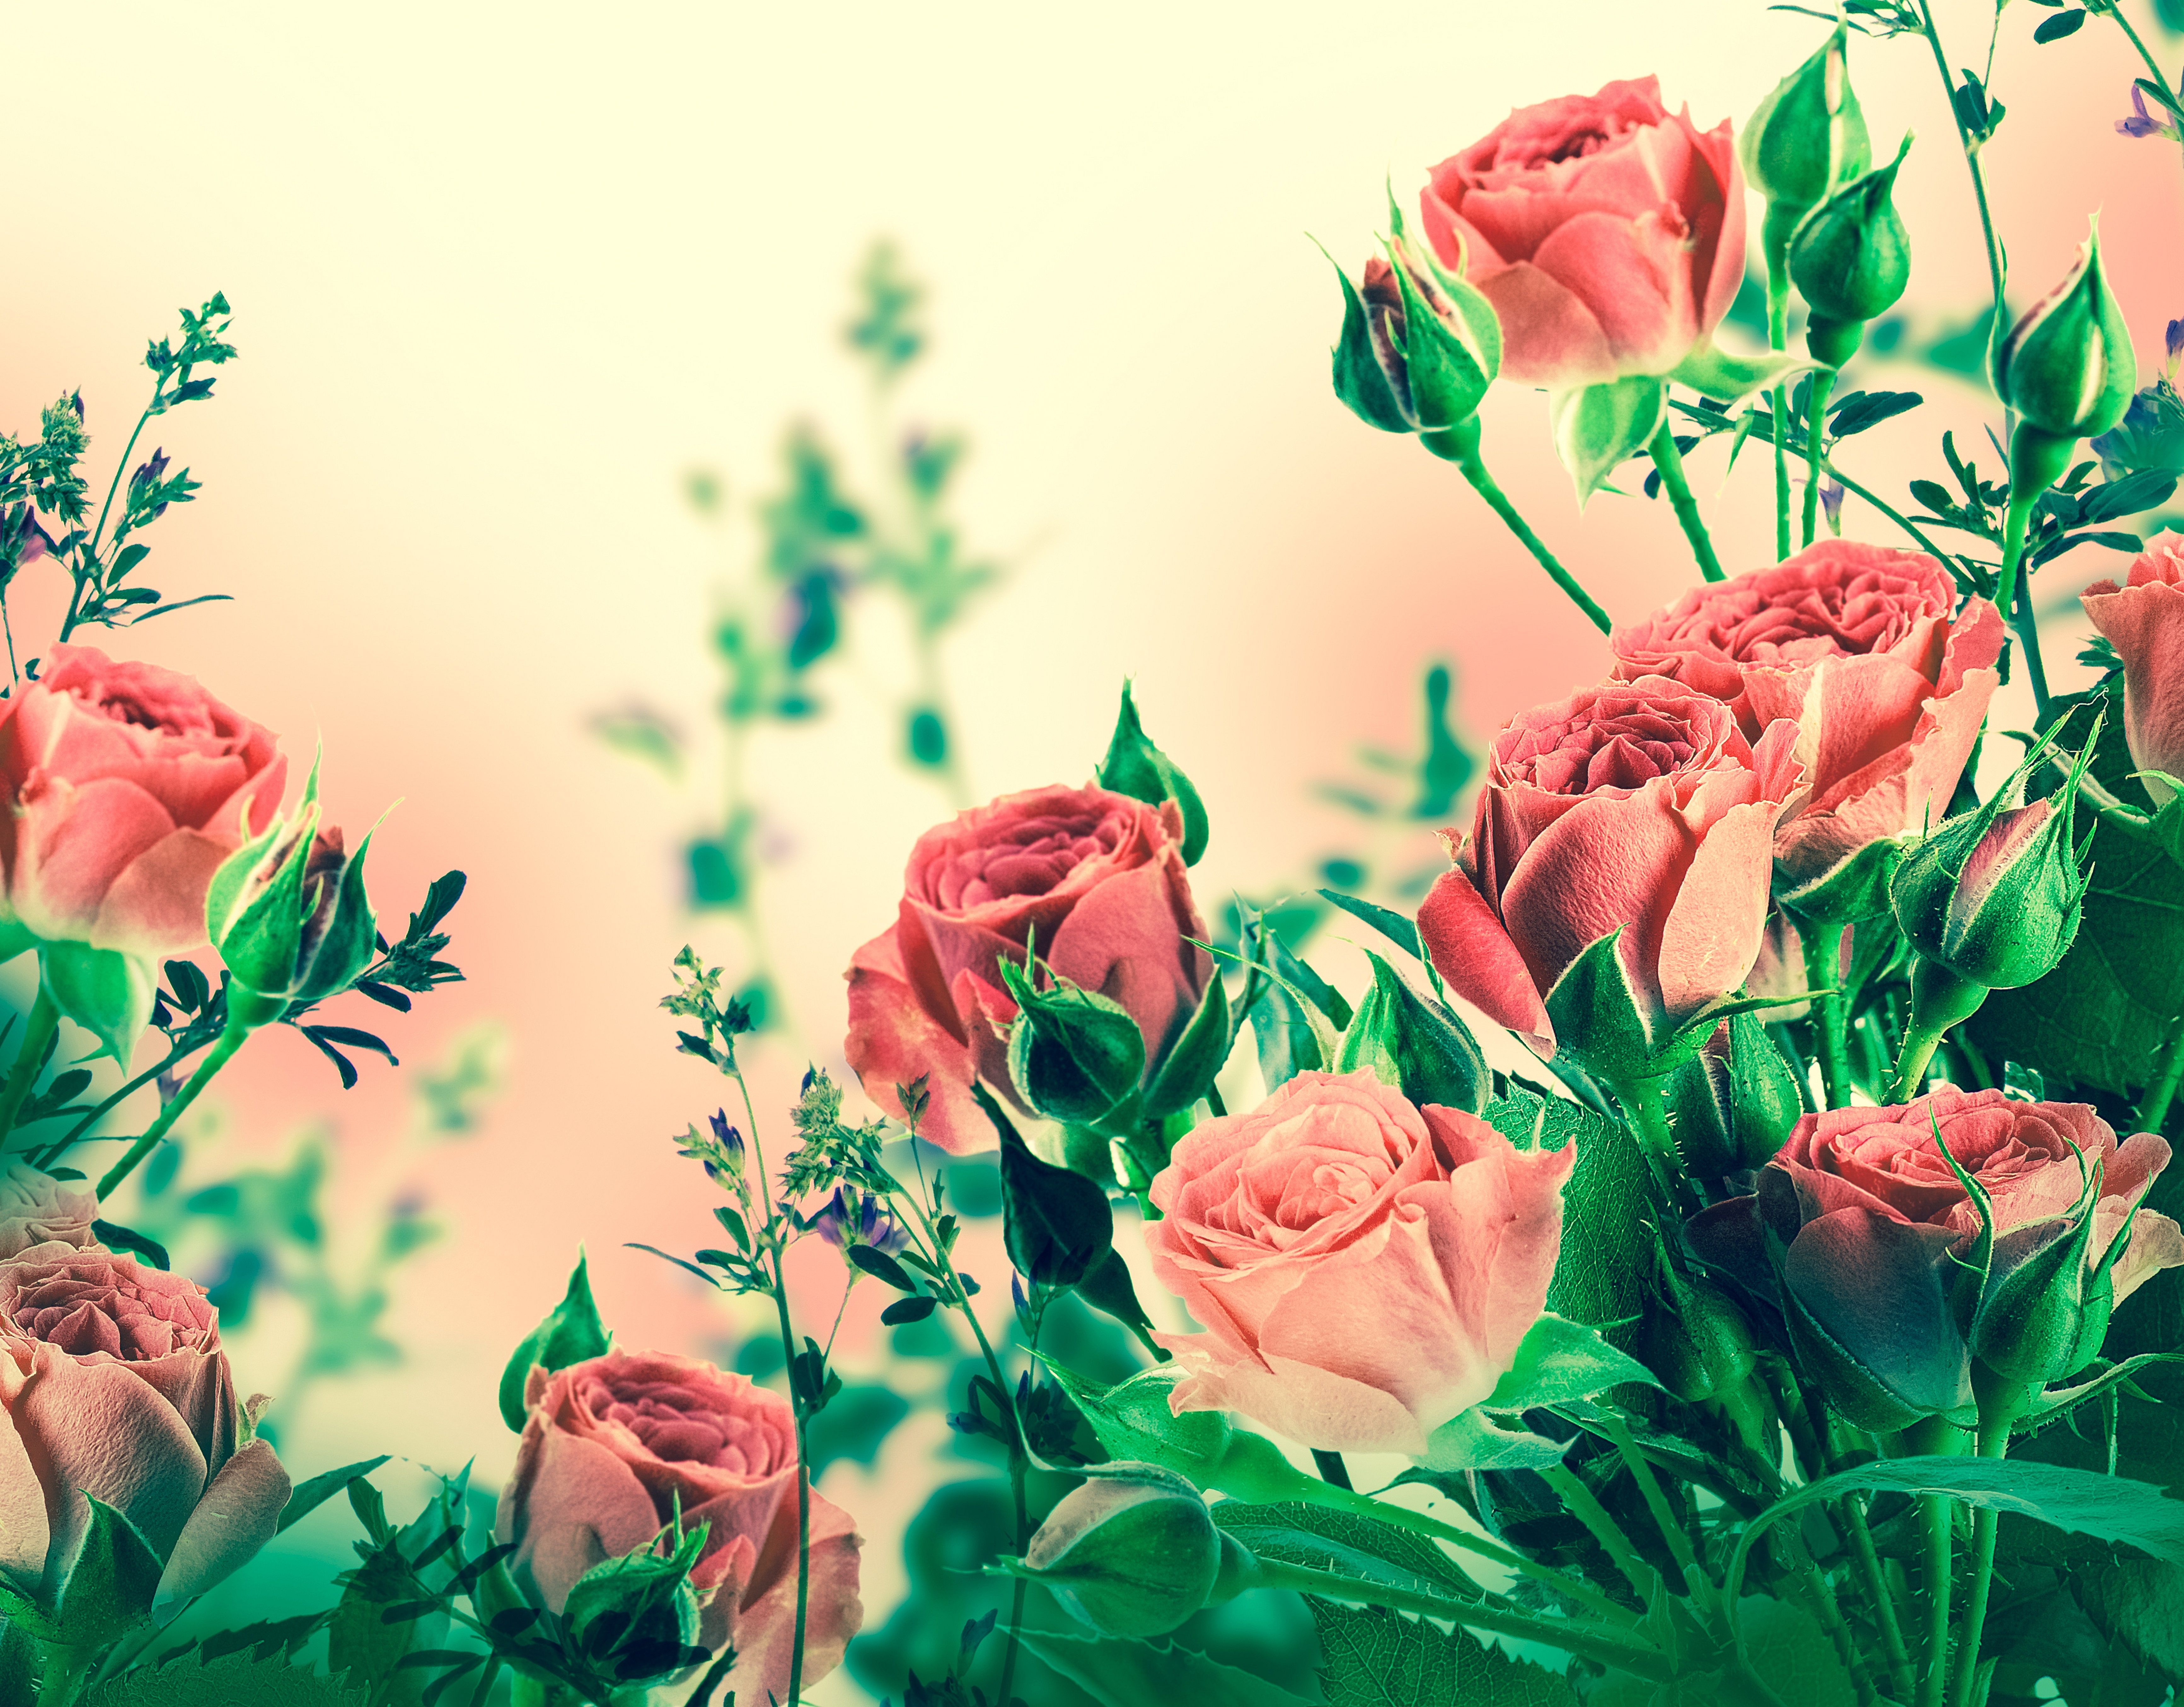 Обложка на экран телефона. Фон цветы. Розы фон. Цветочные обои. Красивый баннер с цветами.